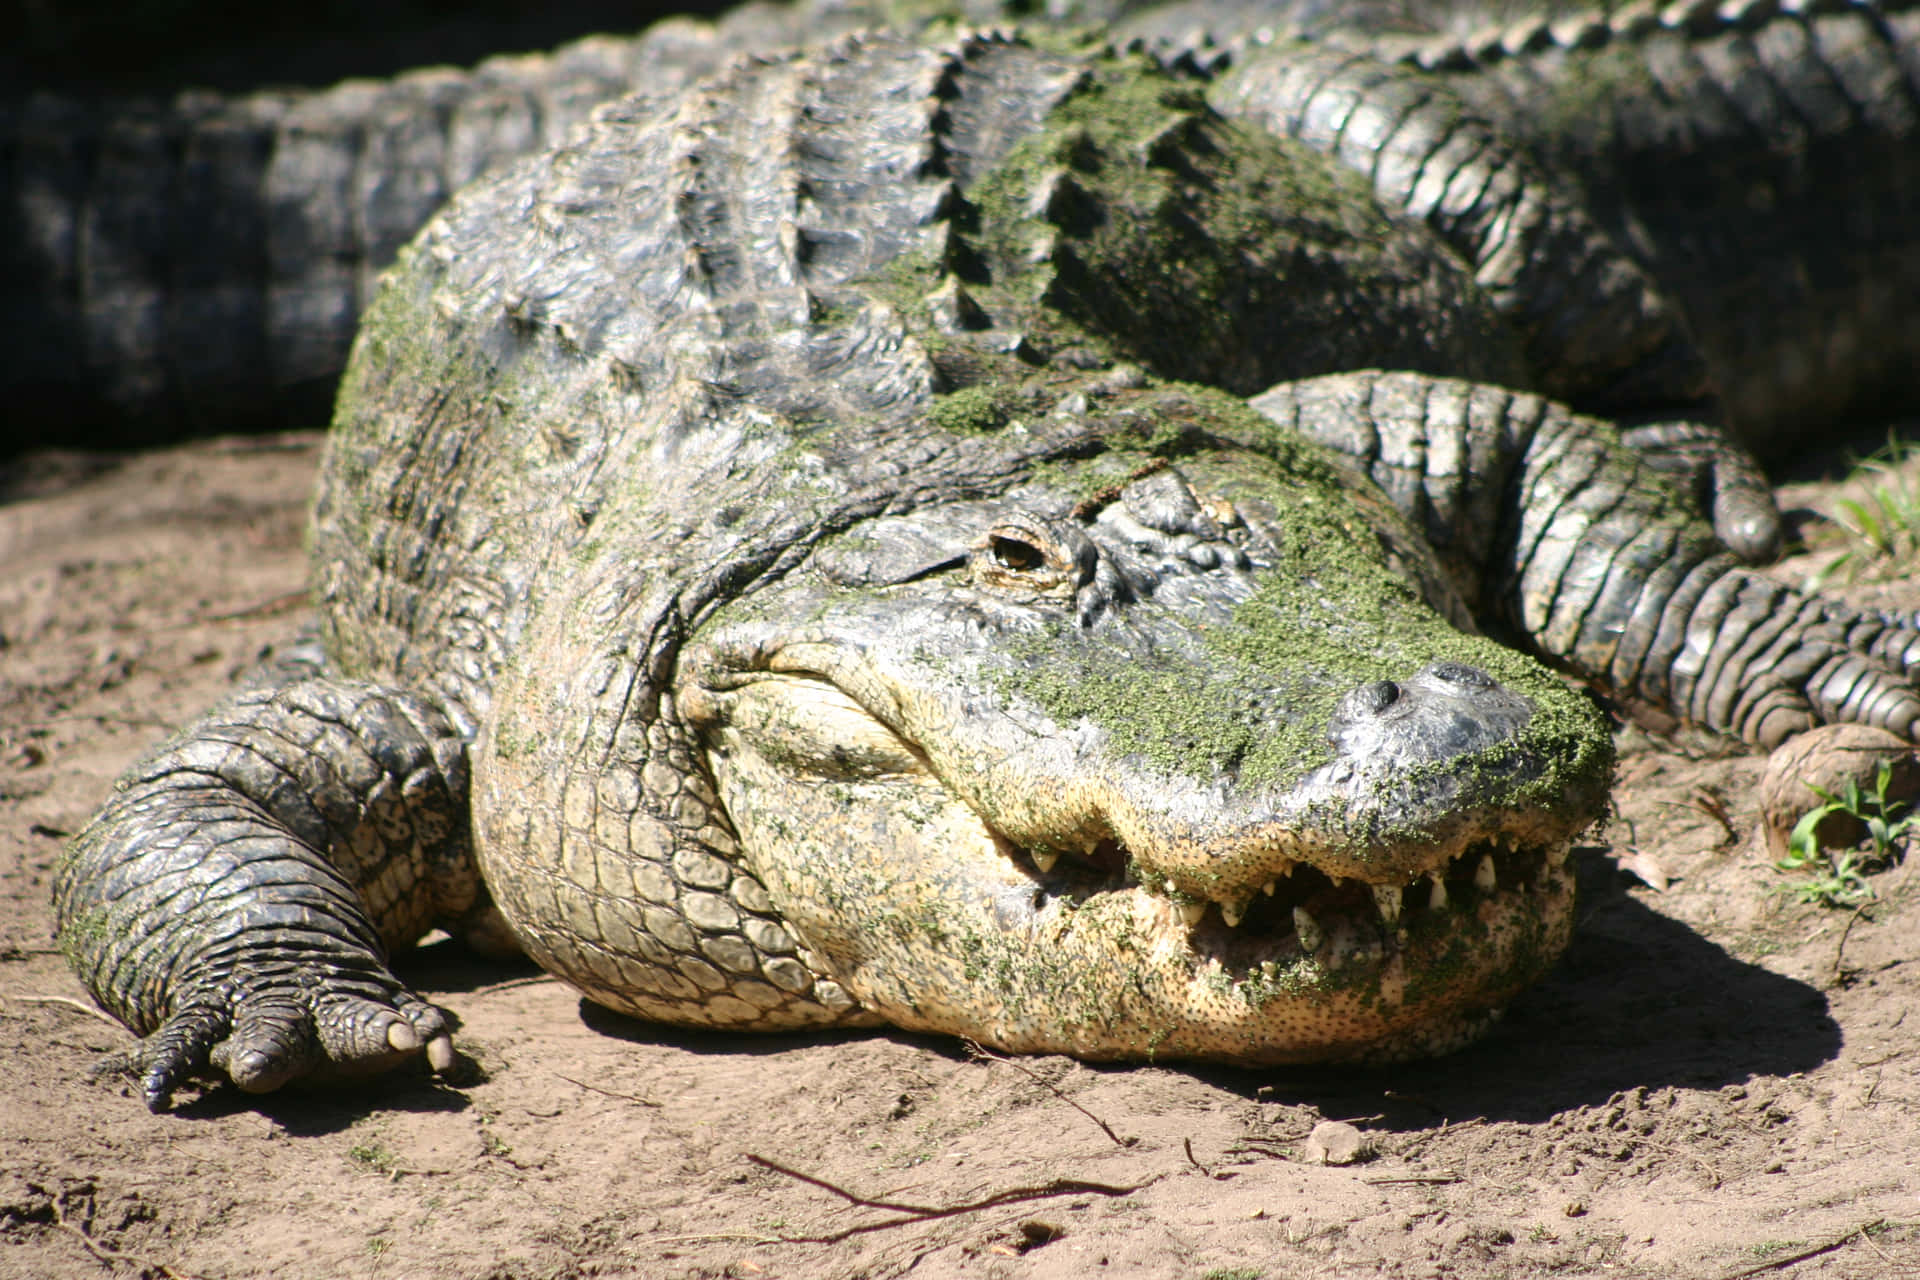 Billedeaf En Alligator, Der Svømmer I En Krop Af Vand.